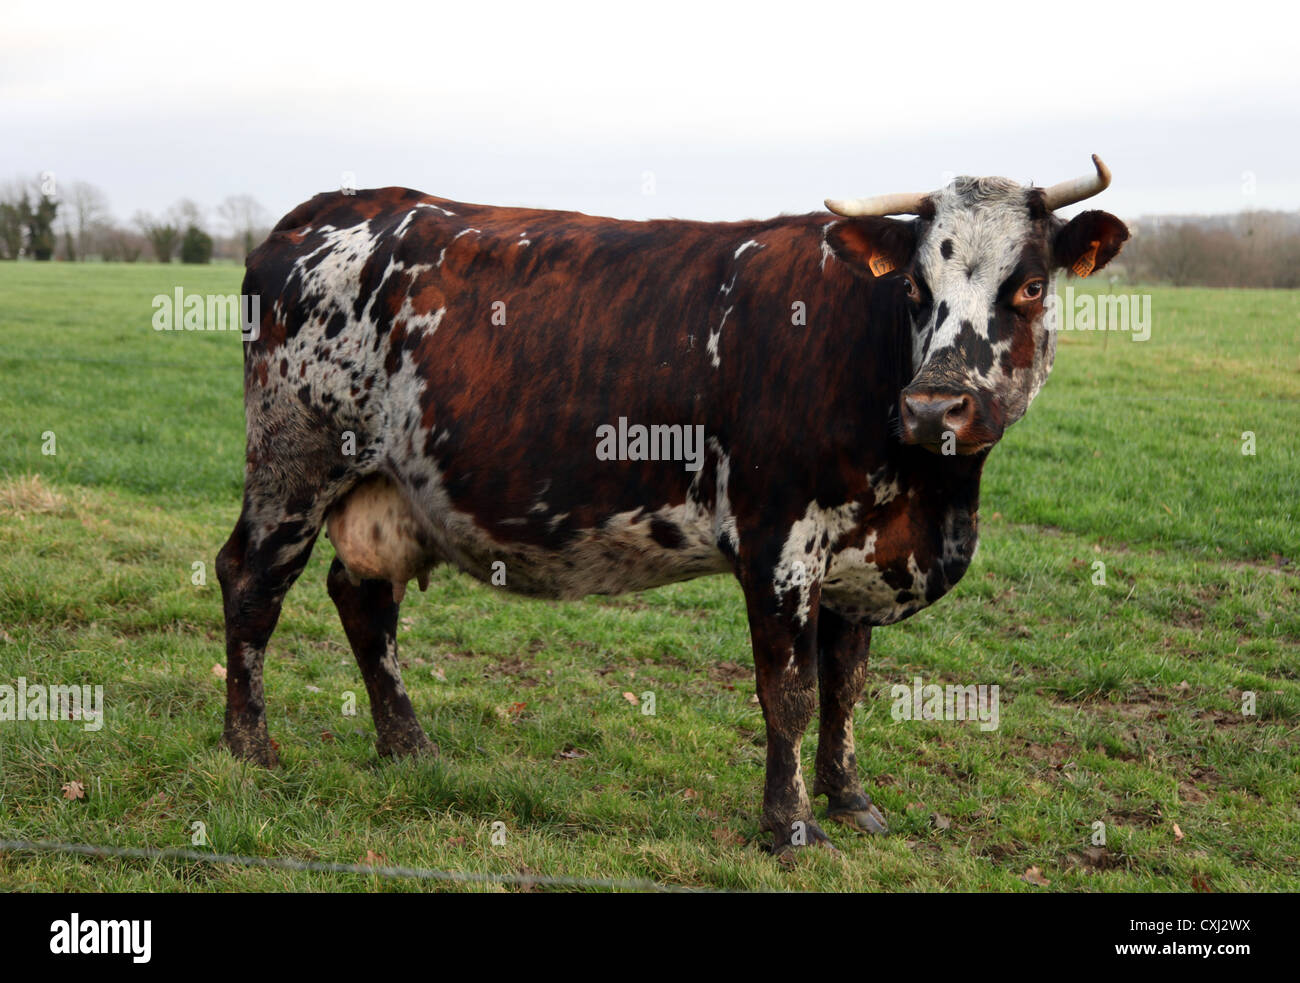 C'est une photo d'une vache normande dans un champ d'herbe en Normandie, à l'ouest de la France. C'est dans une ferme et l'animal nous regarde. Banque D'Images